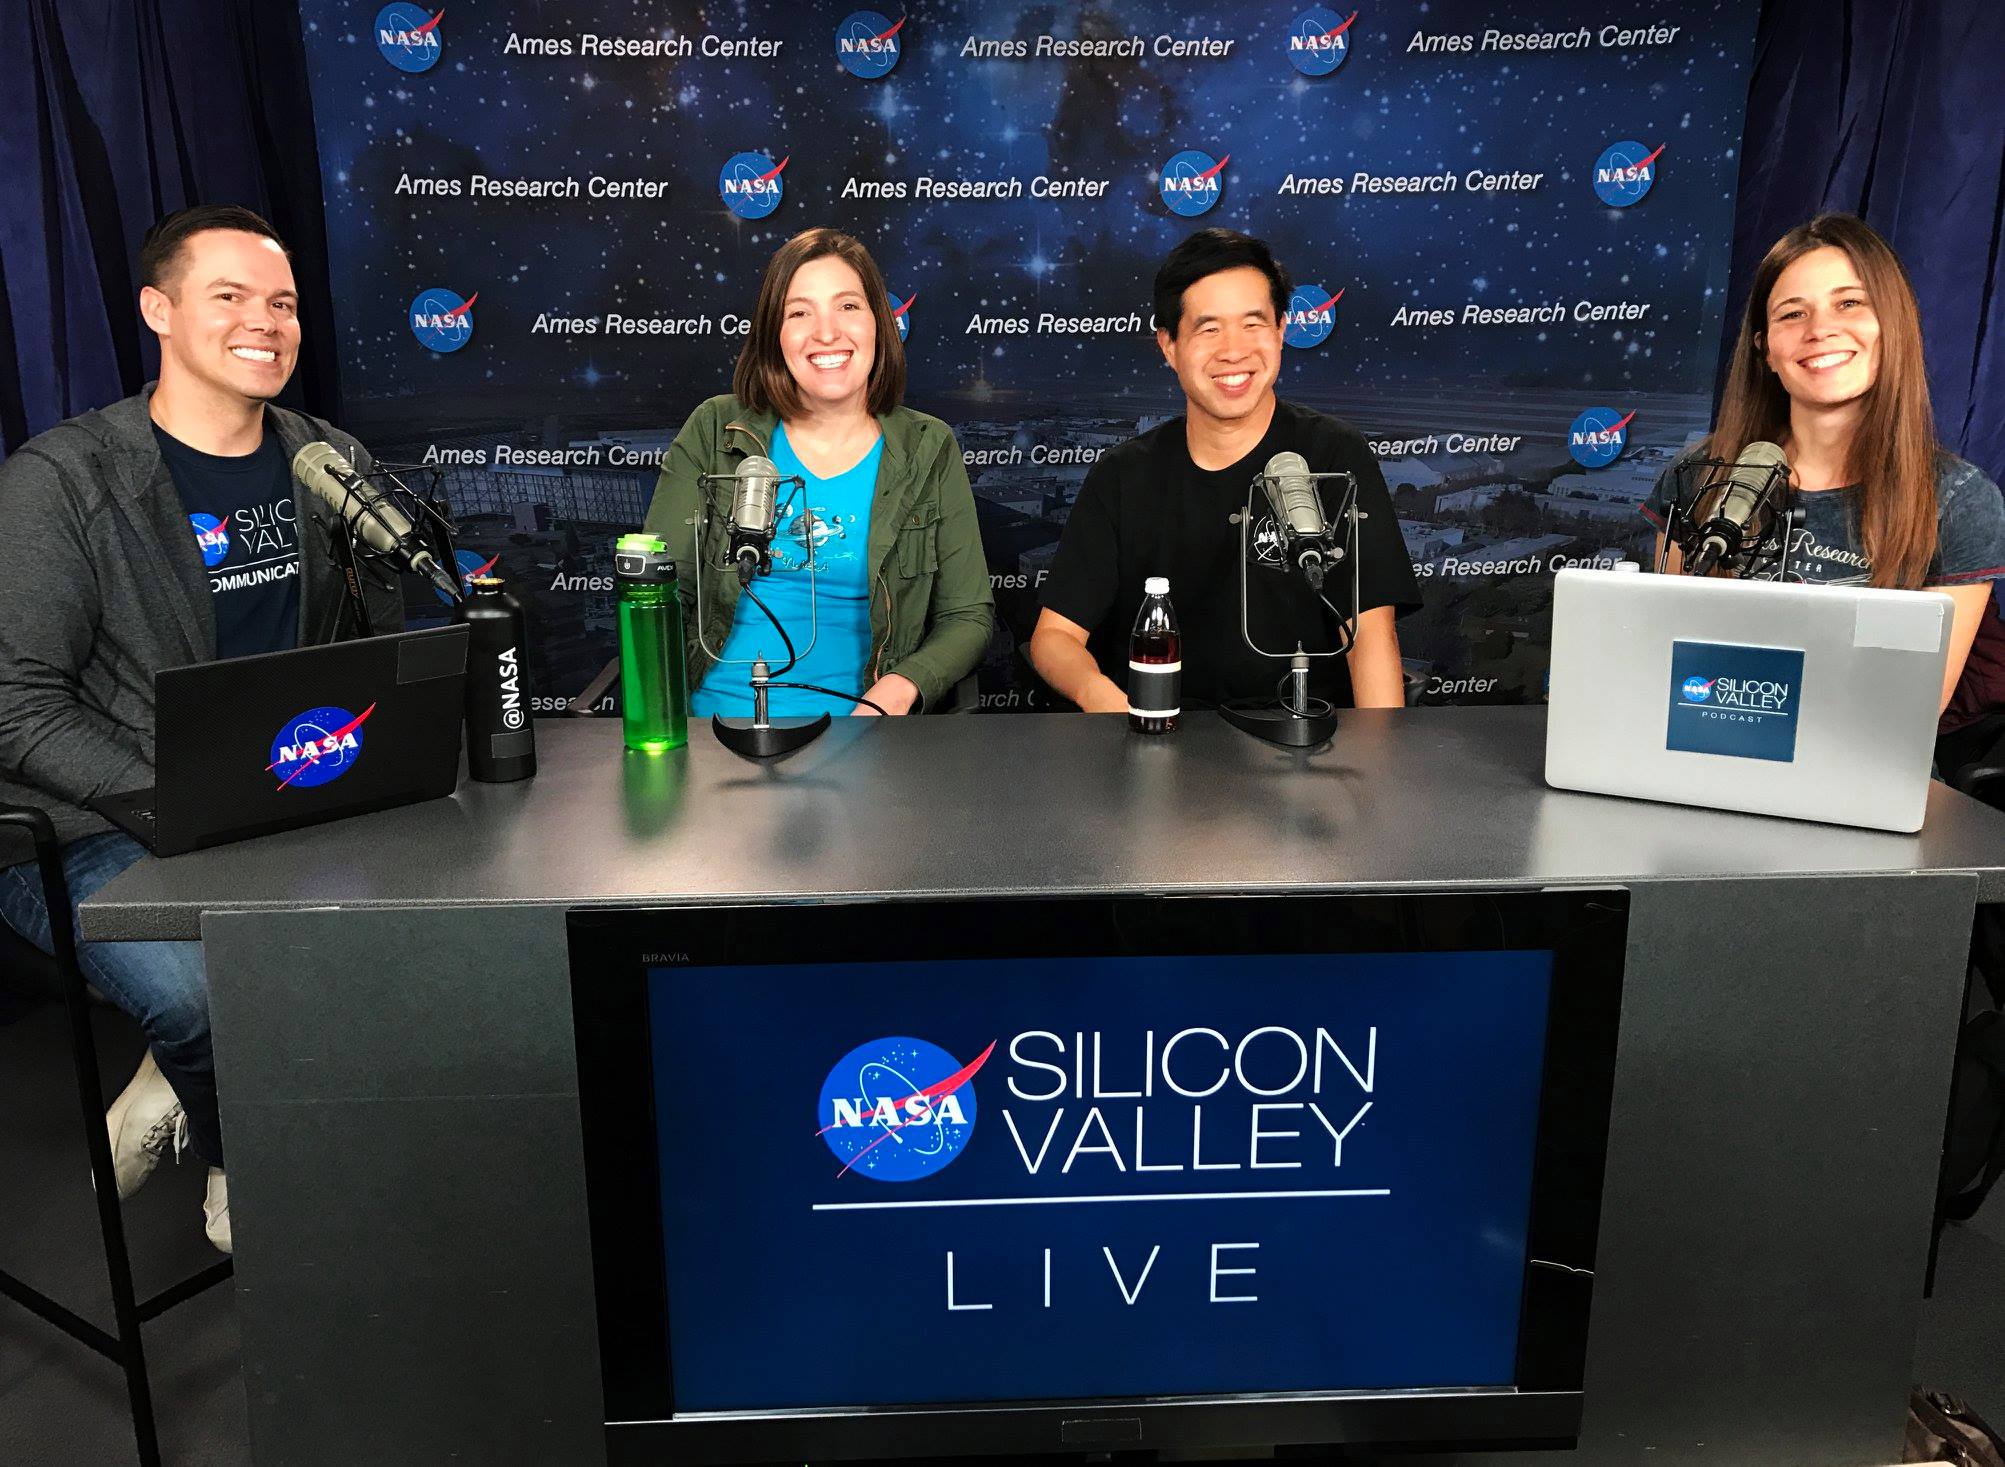 NASA in Silicon Valley Live - Episode 02